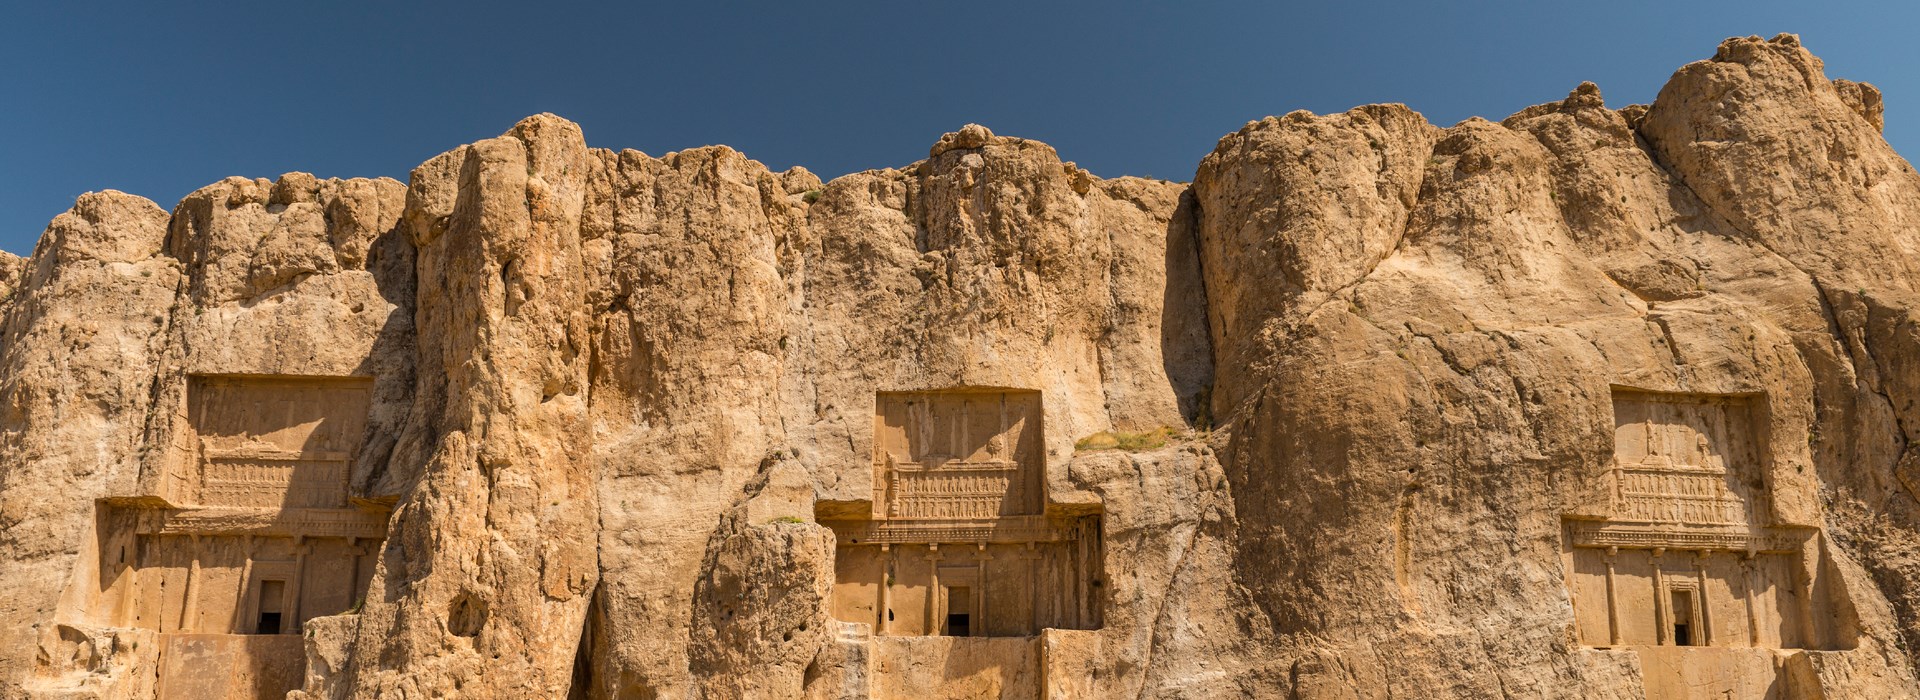 Visiter Necropolis - Iran